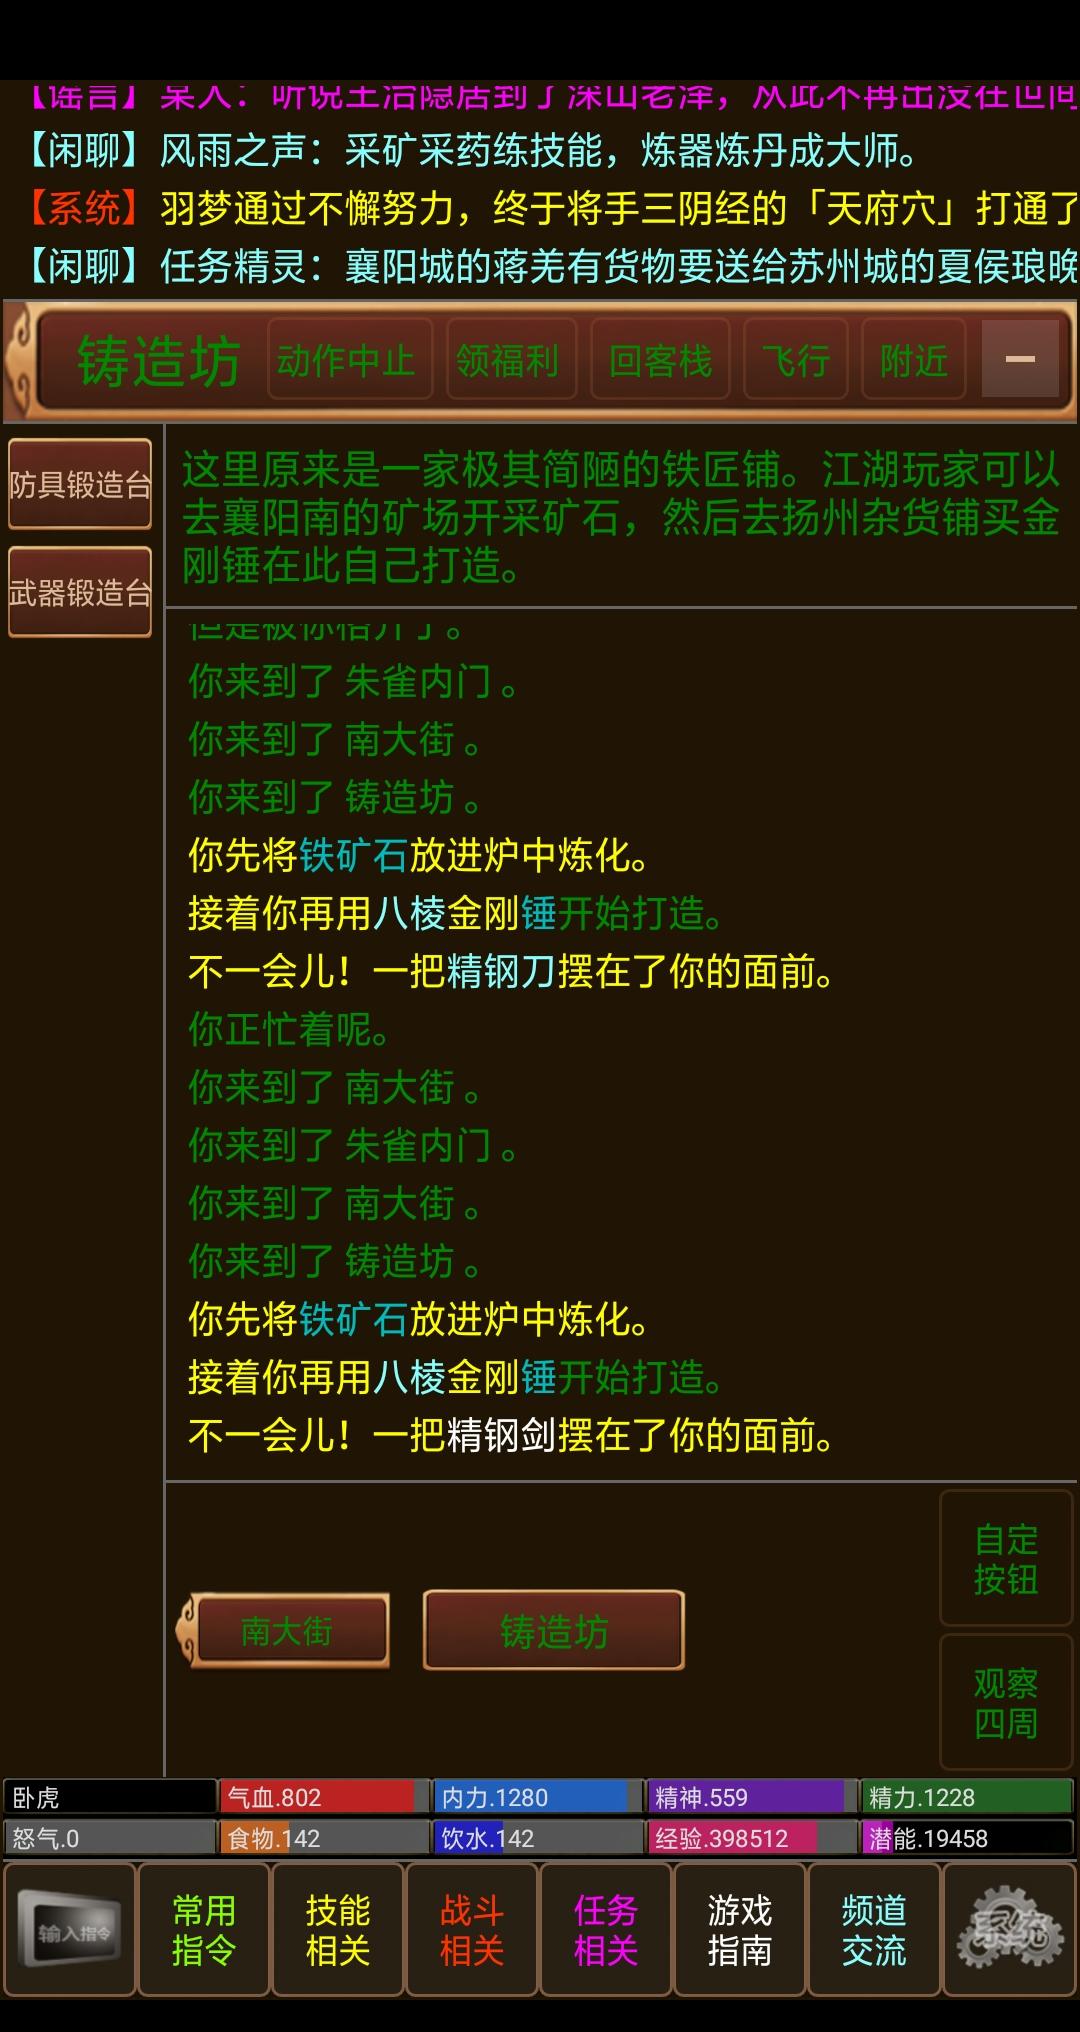 Screenshot 1 of Jiangshan ខ្យល់និងភ្លៀង 2.1.0